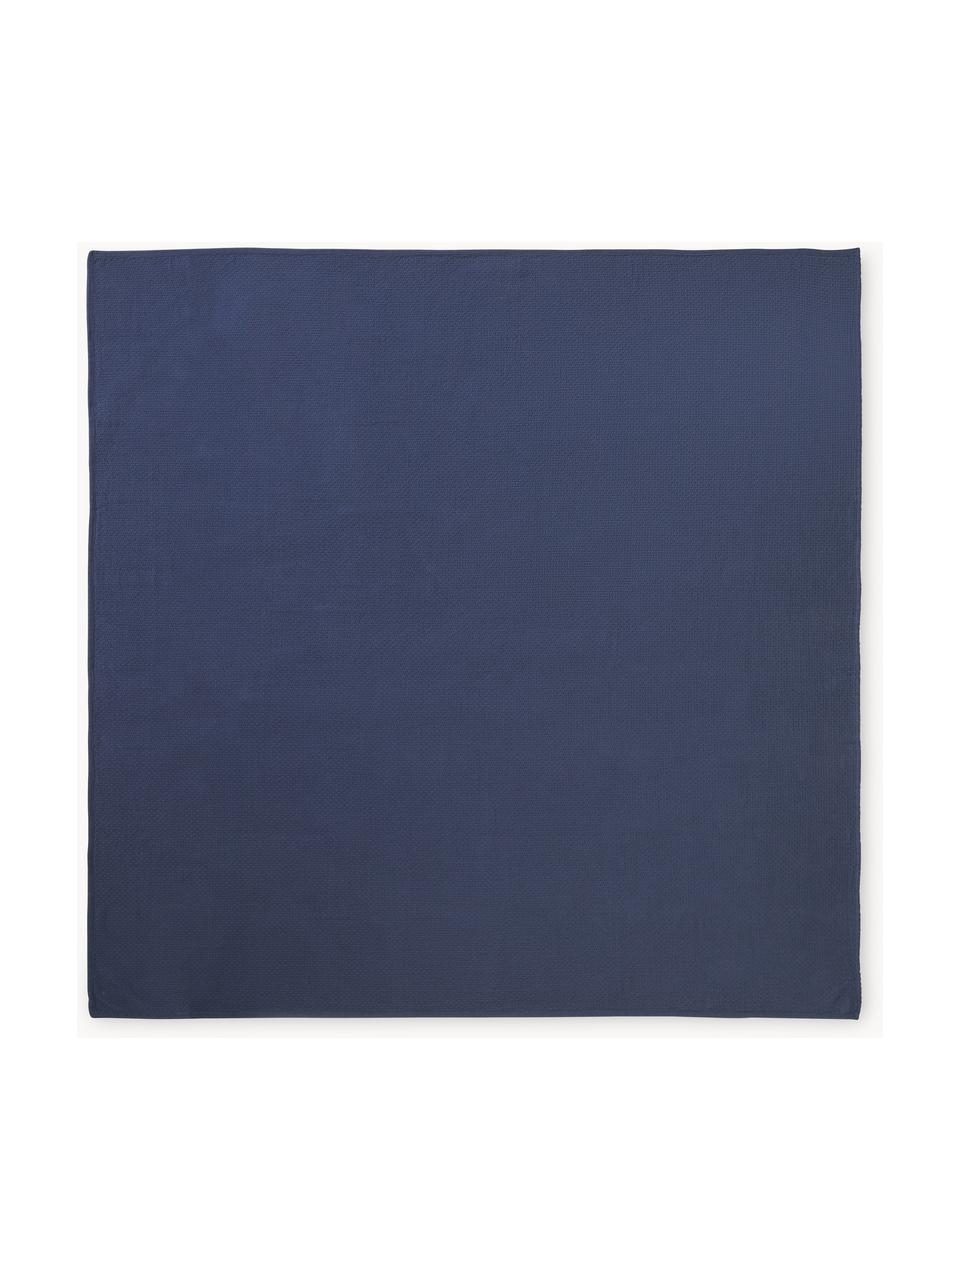 Couvre-lit gaufré piqué Levana, 100 % coton

Le matériau est certifié STANDARD 100 OEKO-TEX®, CITEVE, 5763CIT, Bleu foncé, larg. 180 x long. 250 cm